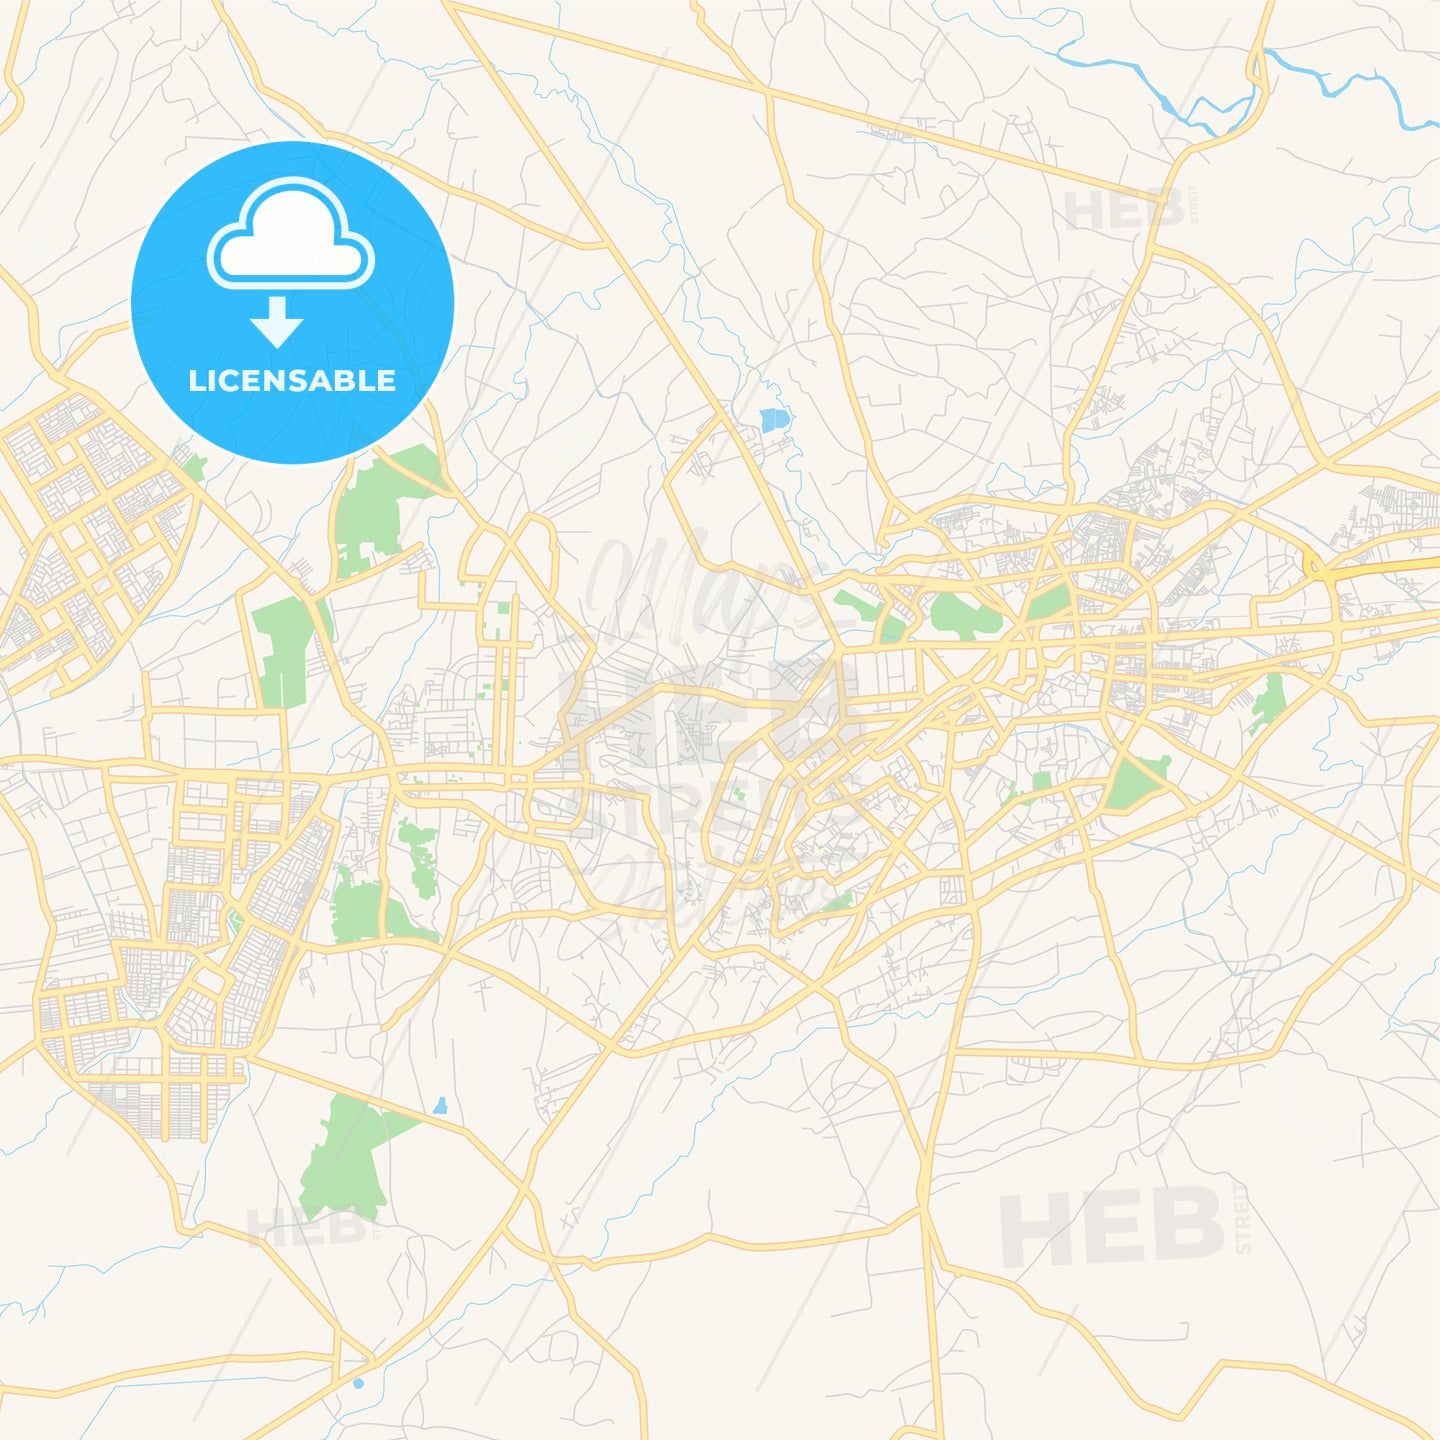 Printable street map of Peshawar, Pakistan